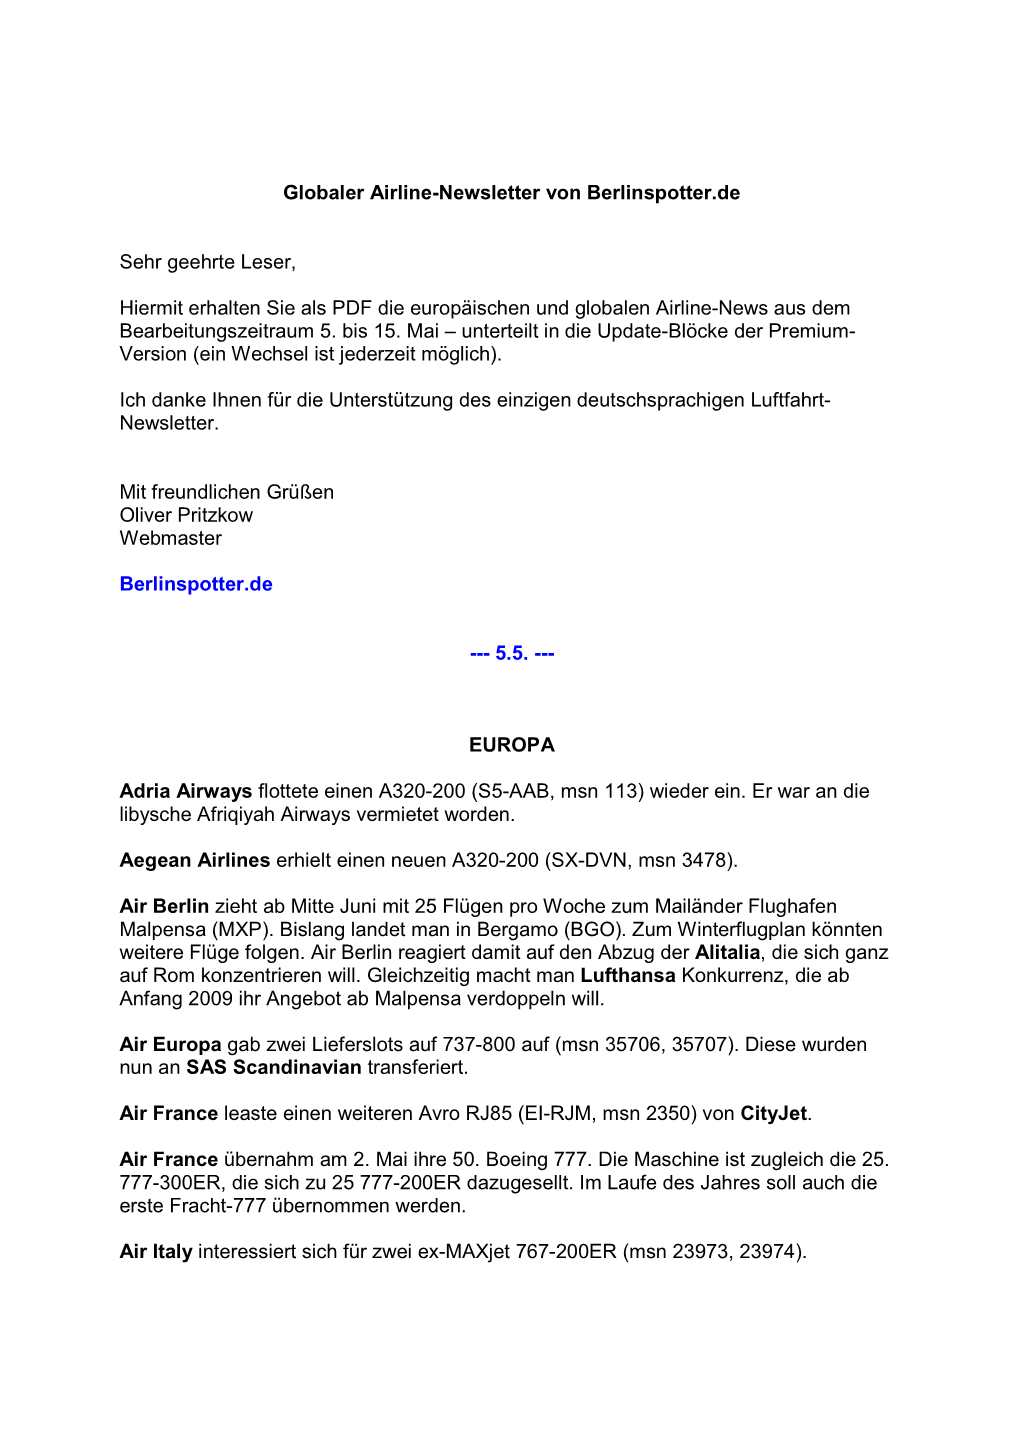 Globaler Airline-Newsletter Von Berlinspotter.De Sehr Geehrte Leser